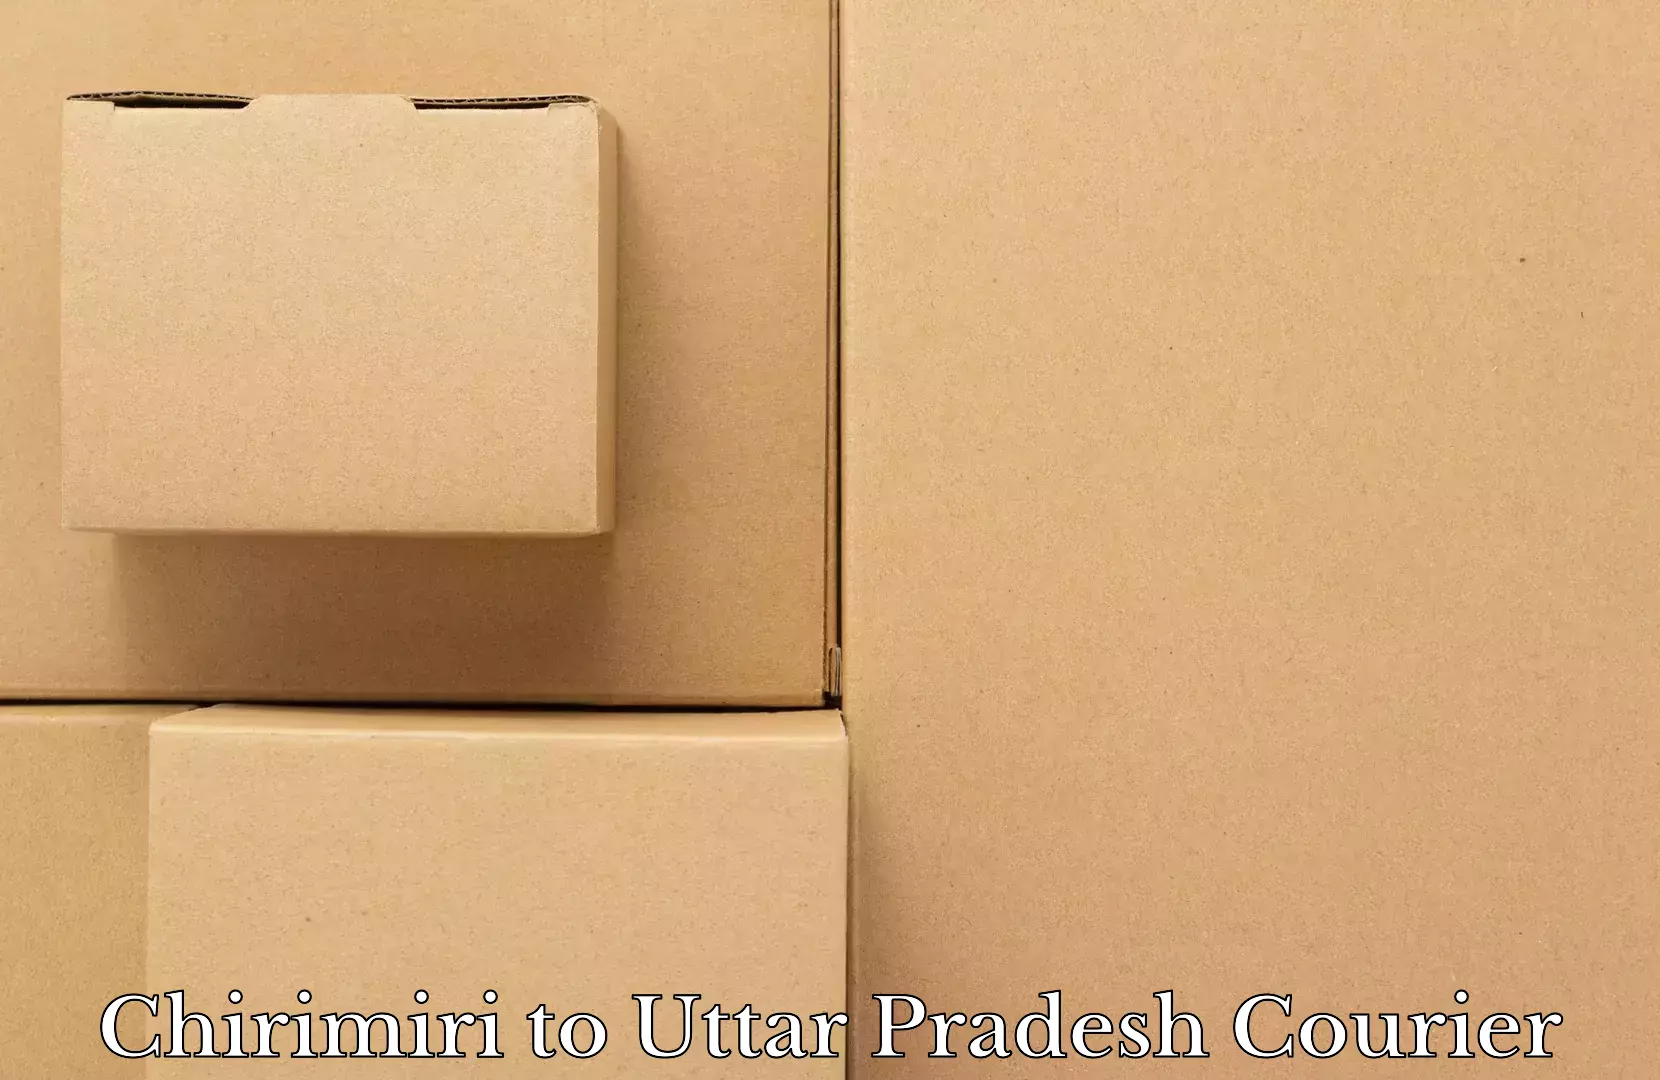 Hassle-free luggage shipping Chirimiri to Hamirpur Uttar Pradesh